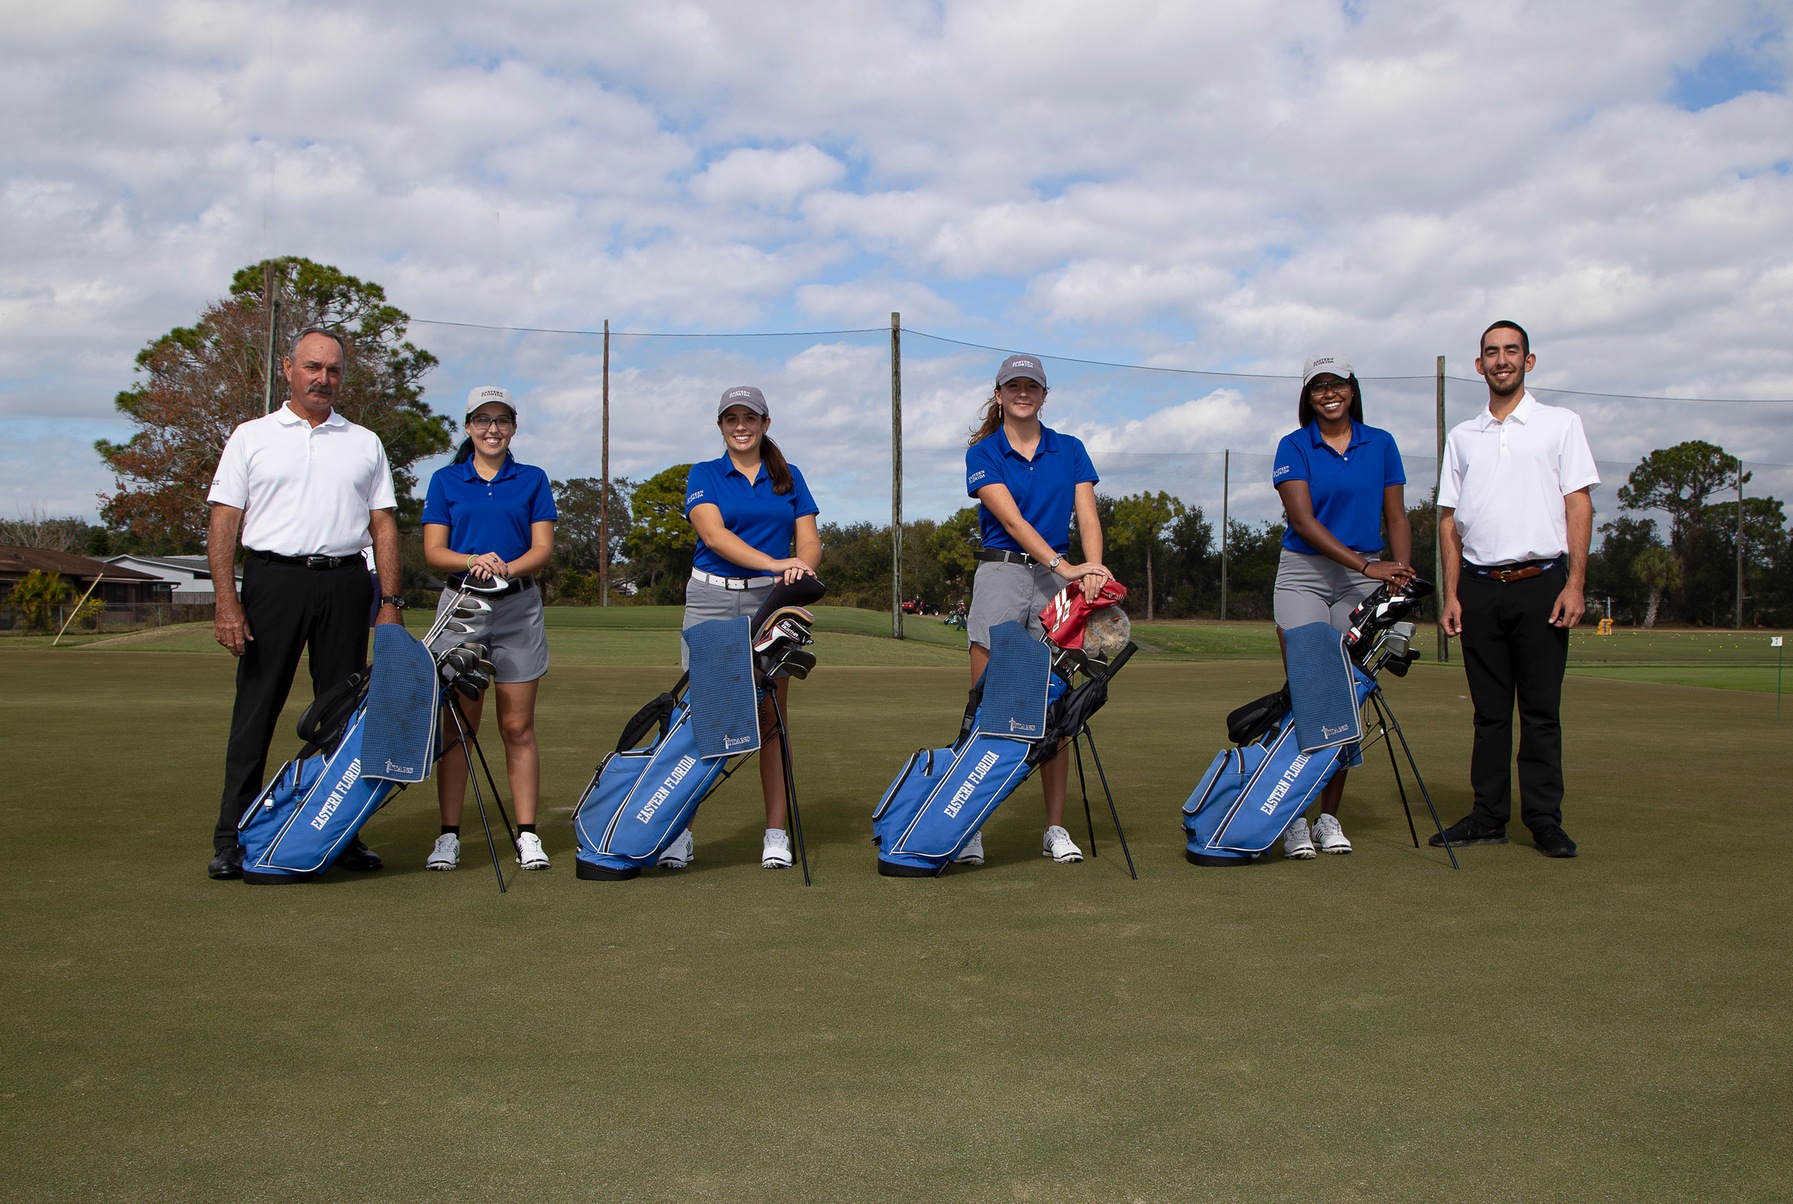 Women's golf team prepared to host Region 8 Tournament this weekend